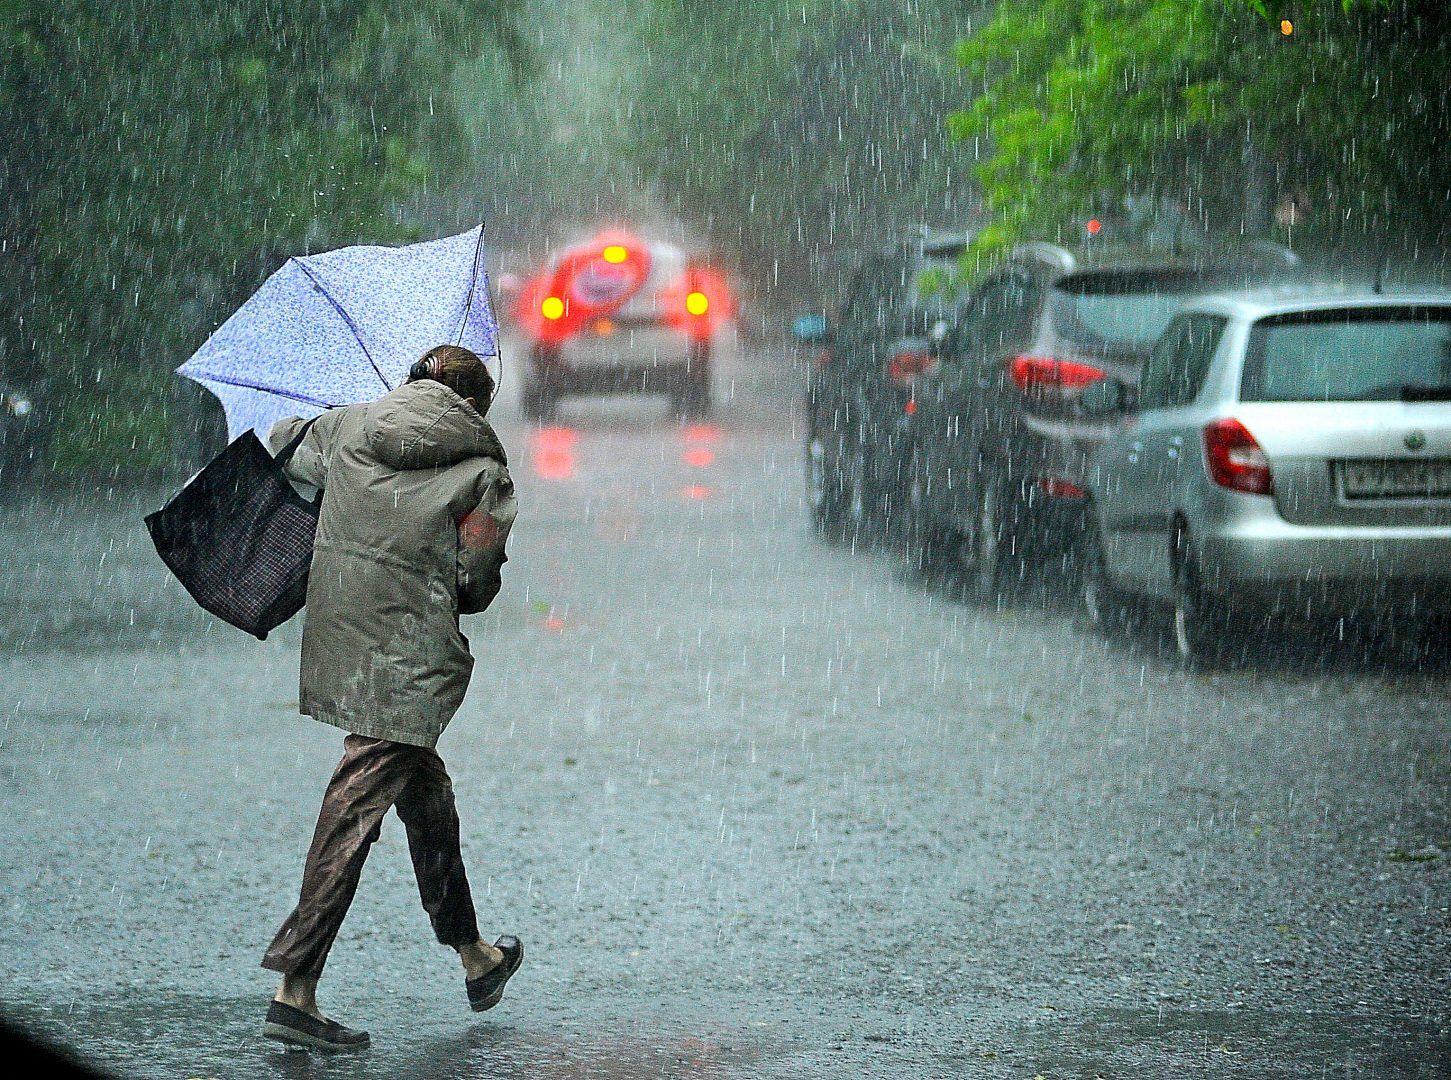 Облачную погода и кратковременные дожди спрогнозировали синоптики в столице на субботу. Фото: архив